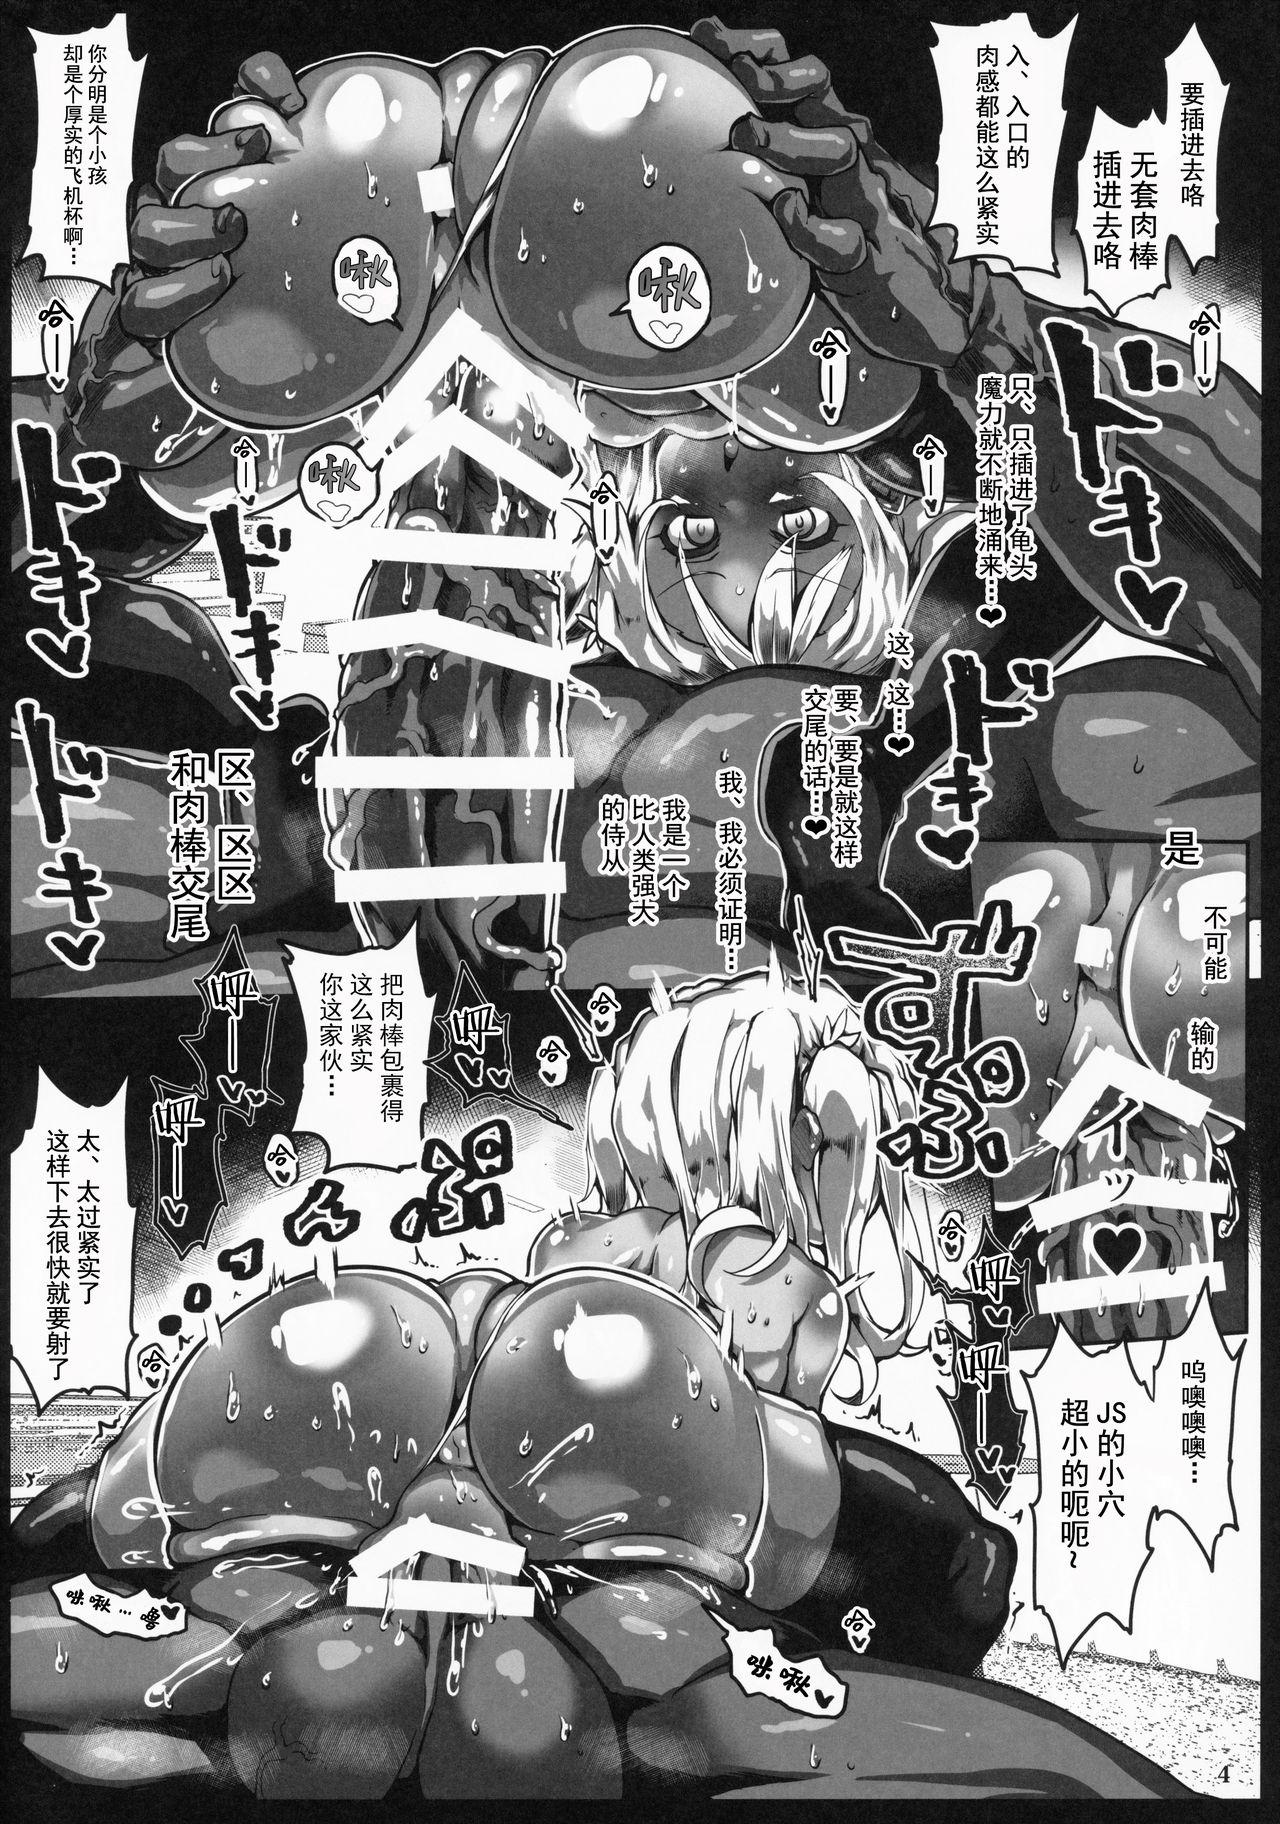 Gang Bang 24-jikan Zu~tto Sudden Death de Risei o Girigiri Tamochinagara Otona Kaomake no Egui Sex - Fate kaleid liner prisma illya Gaysex - Page 5